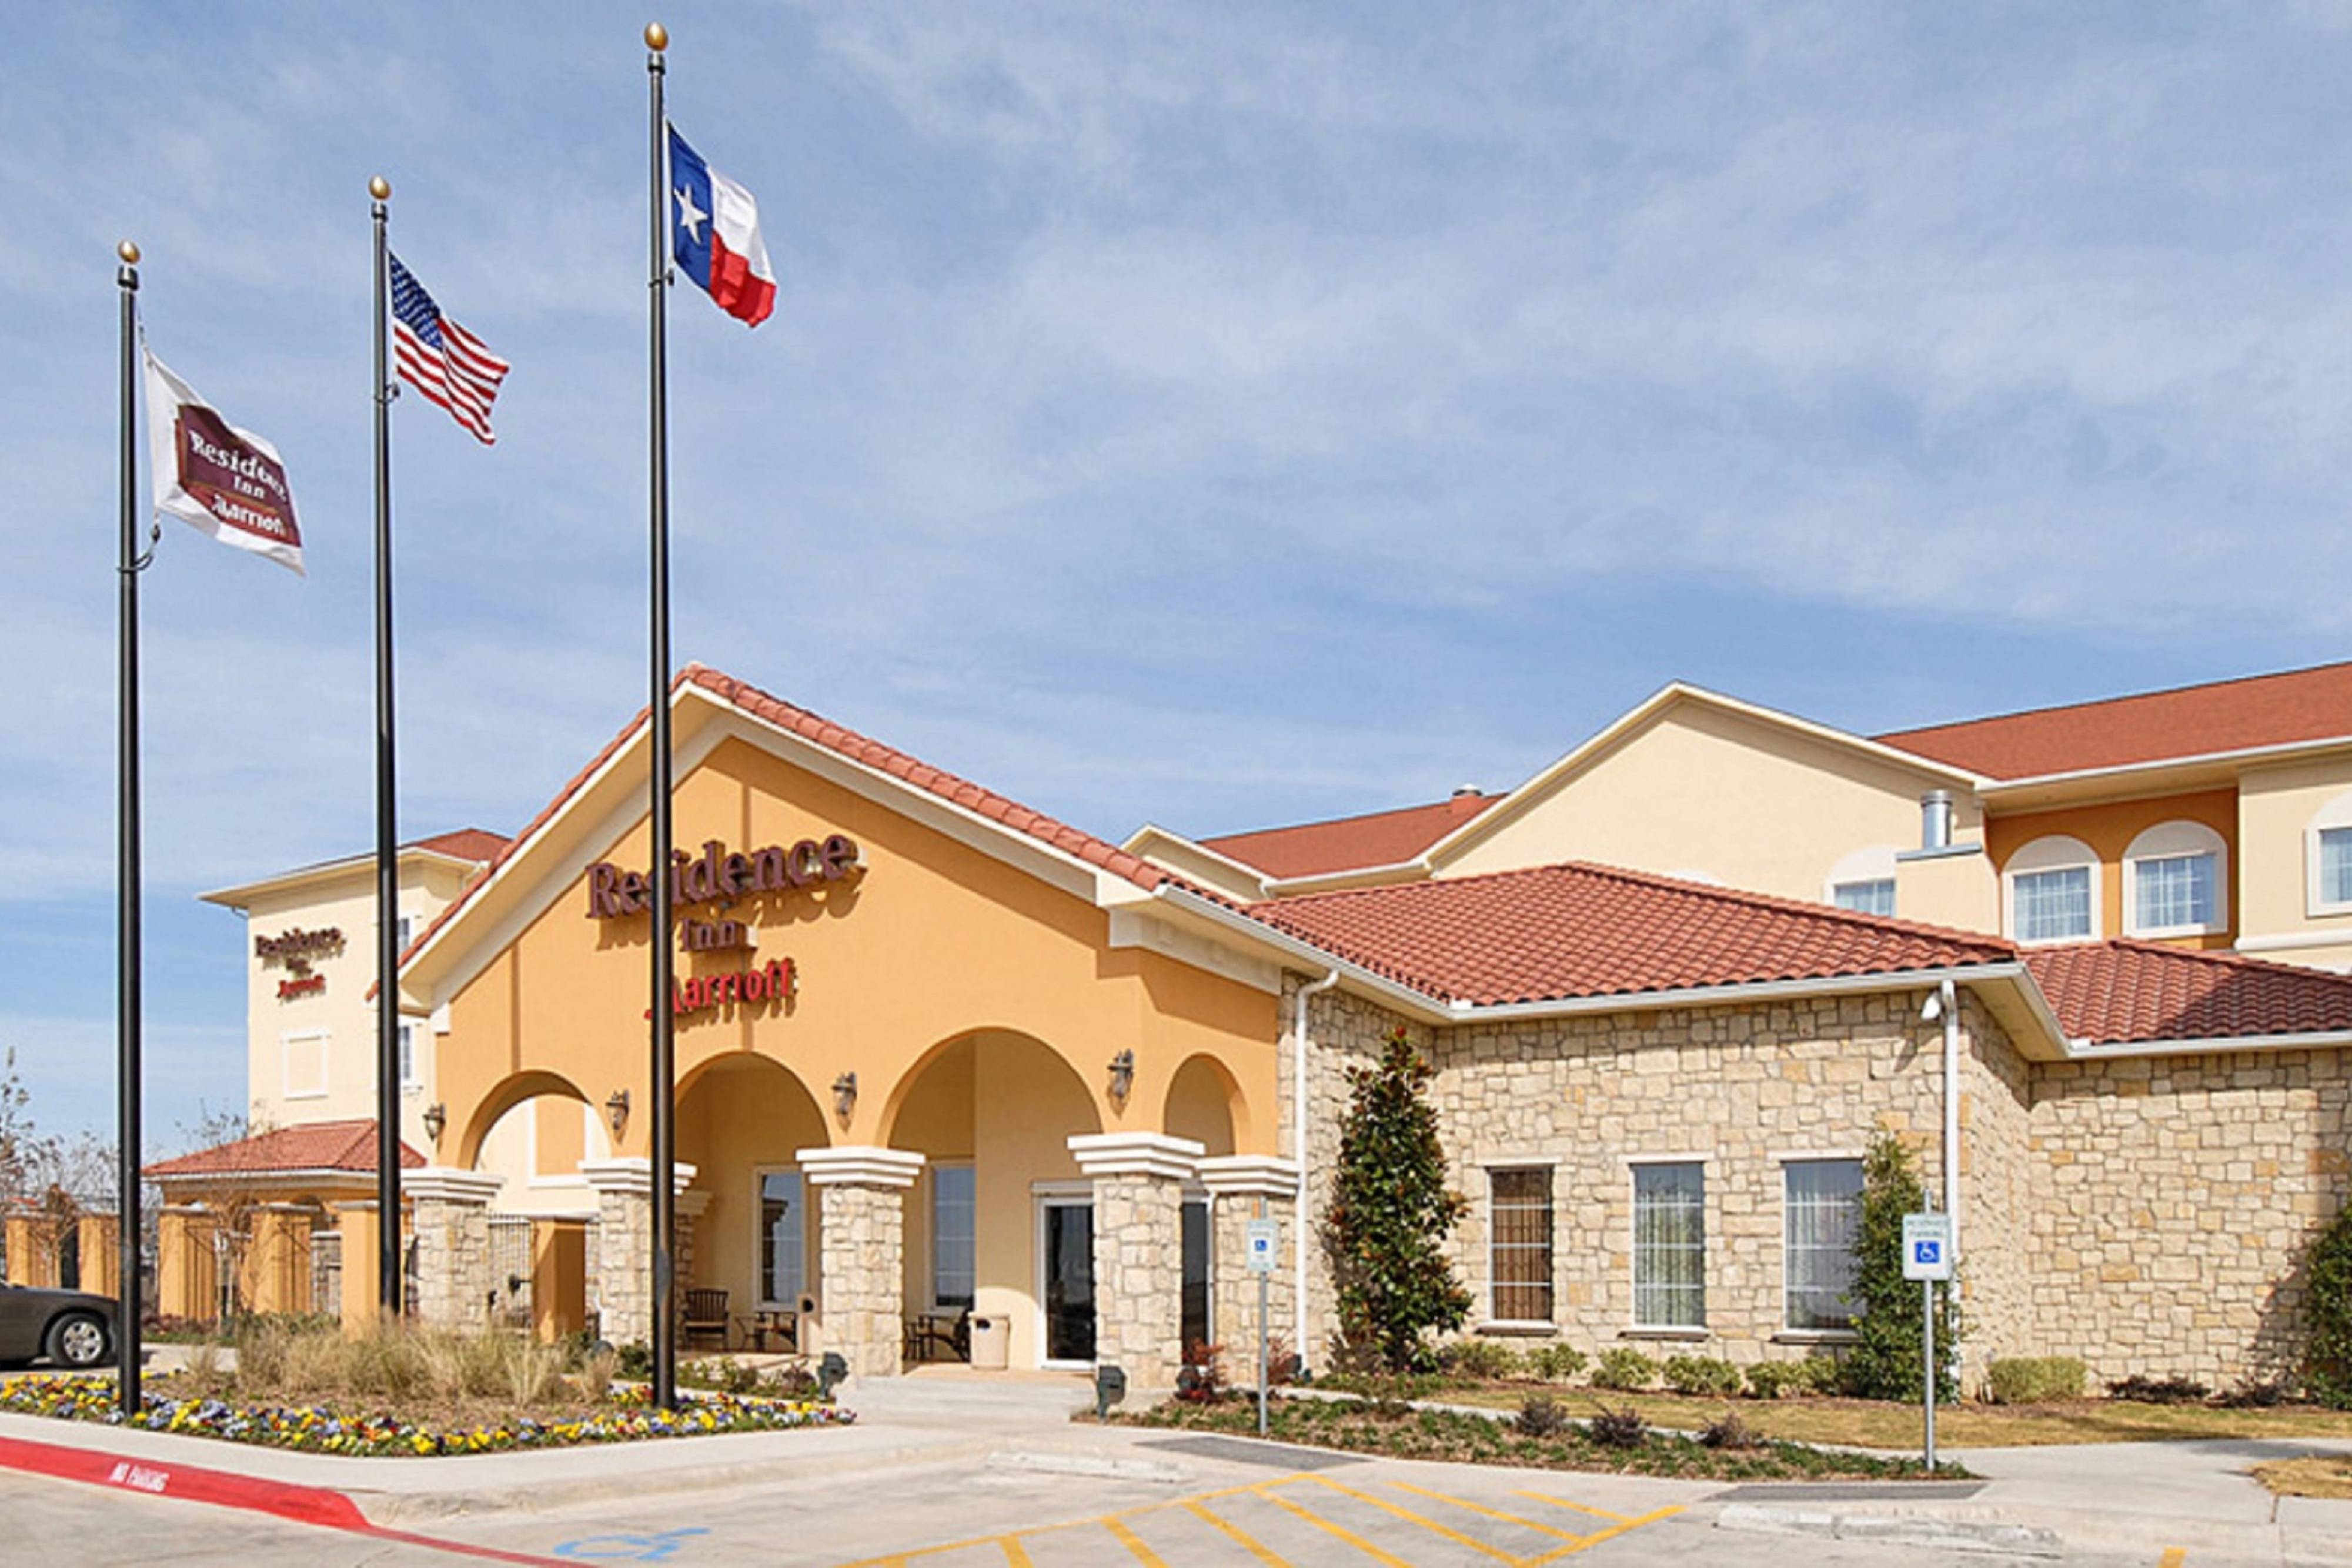 Photo of Residence Inn Abilene, Abilene, TX